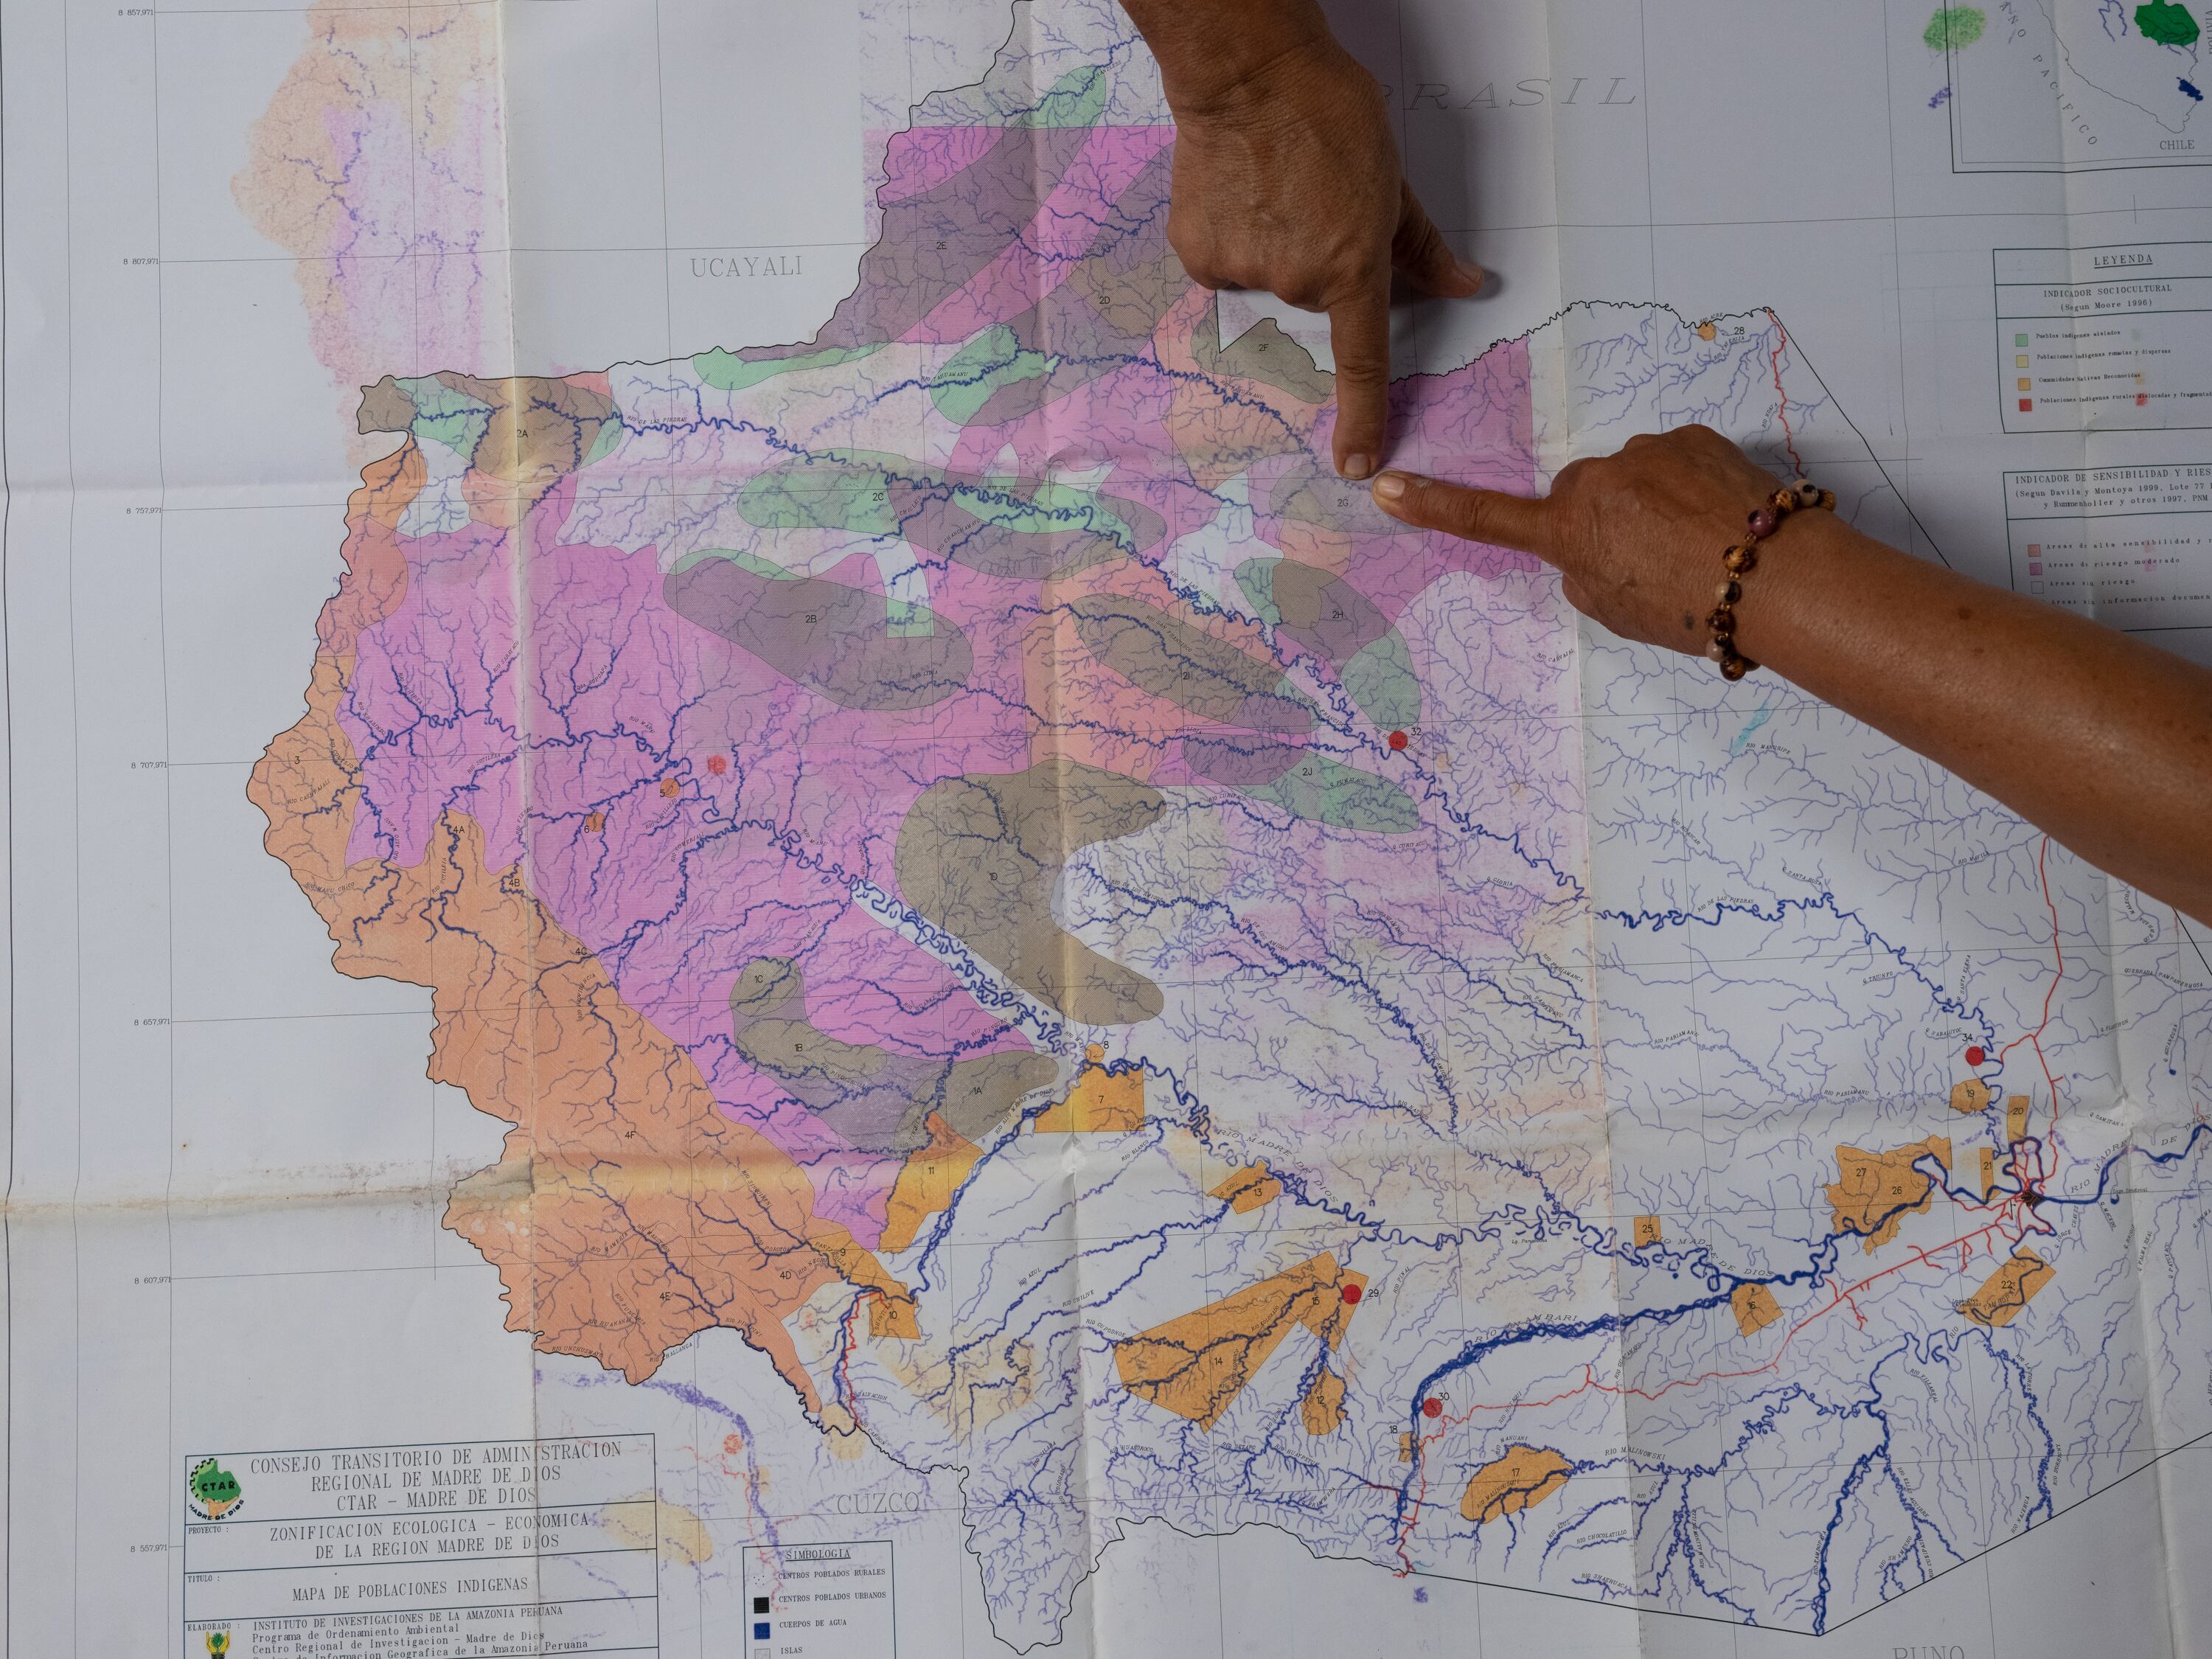 Miembros de la FENAMAD (Federación Nativa del Río Madre de Dios y Afluentes) señalan los puntos dentro de las reservas territoriales de la Amazonía en donde se han producido avistamientos y enfrentamientos entre madereros y grupos en aislamiento voluntario.